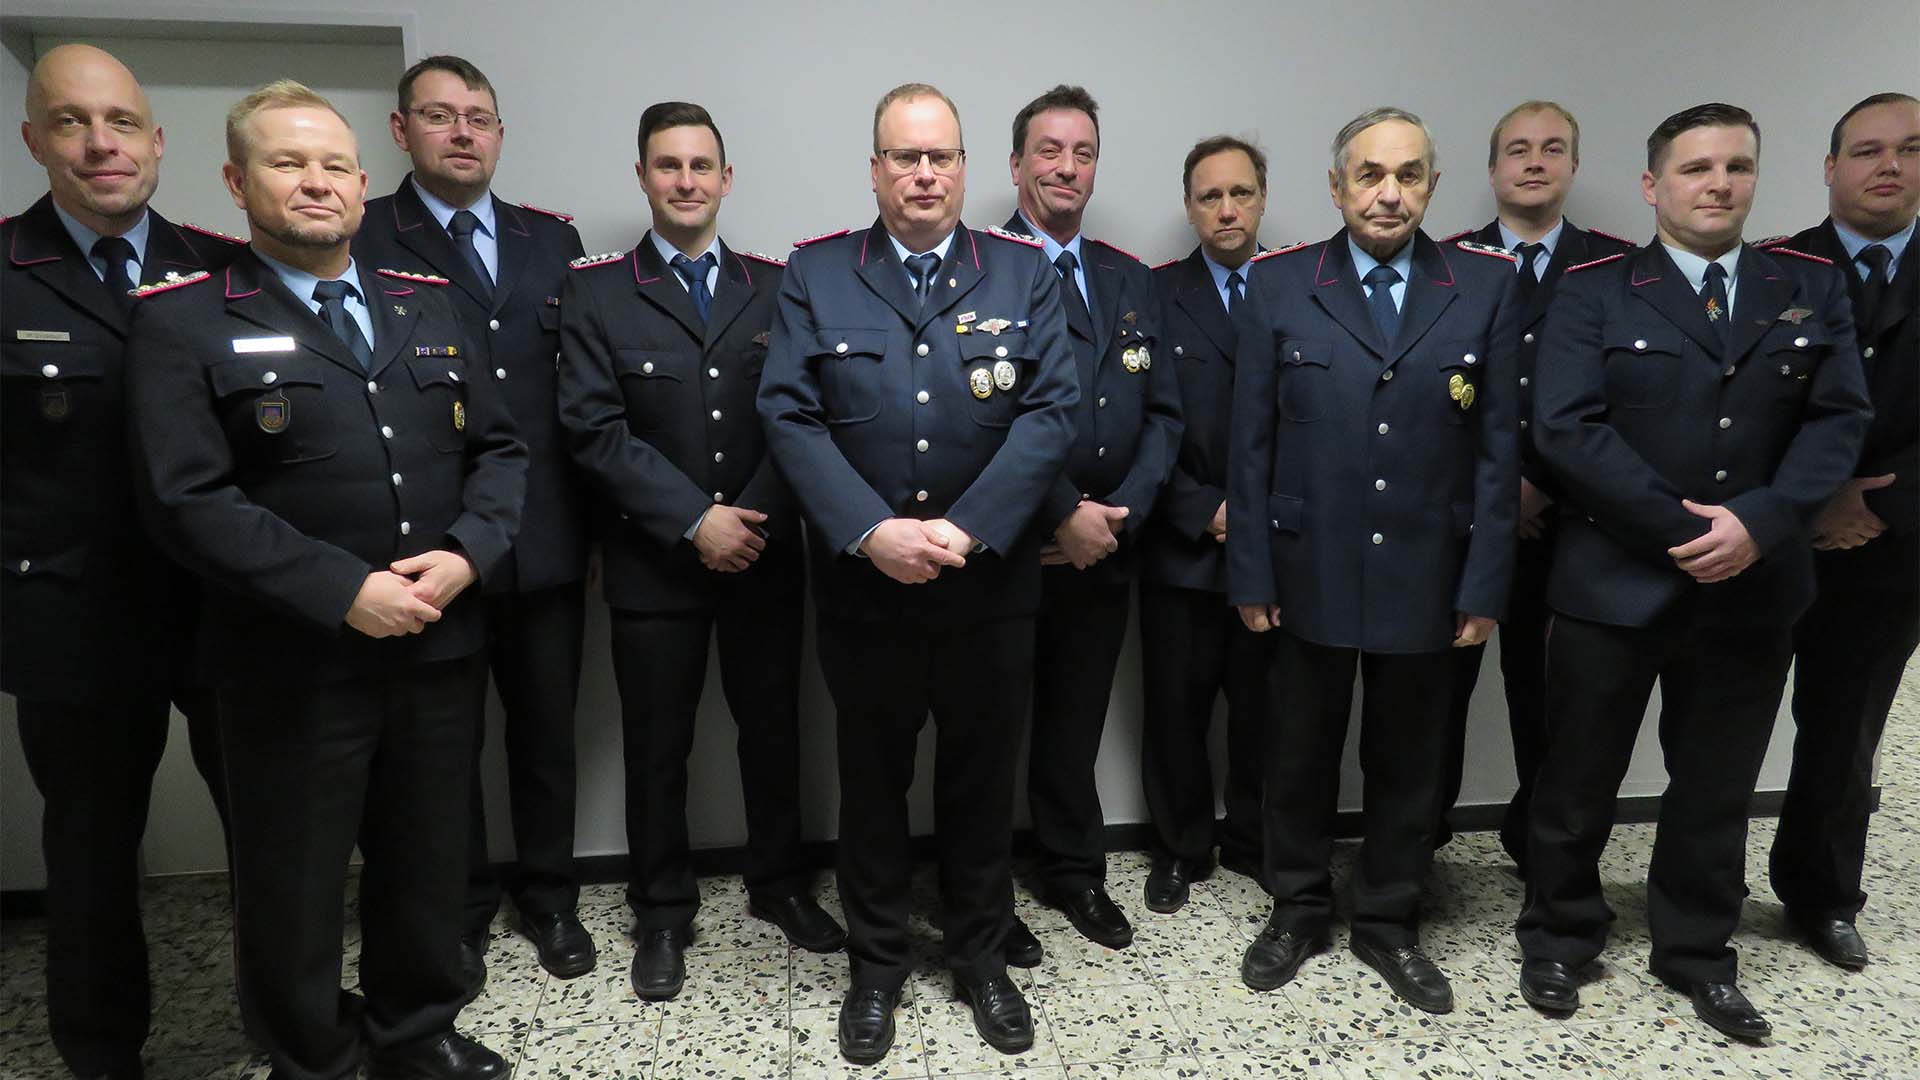 Gruppenbild von elf Männern in Feuerwehr-Uniform.